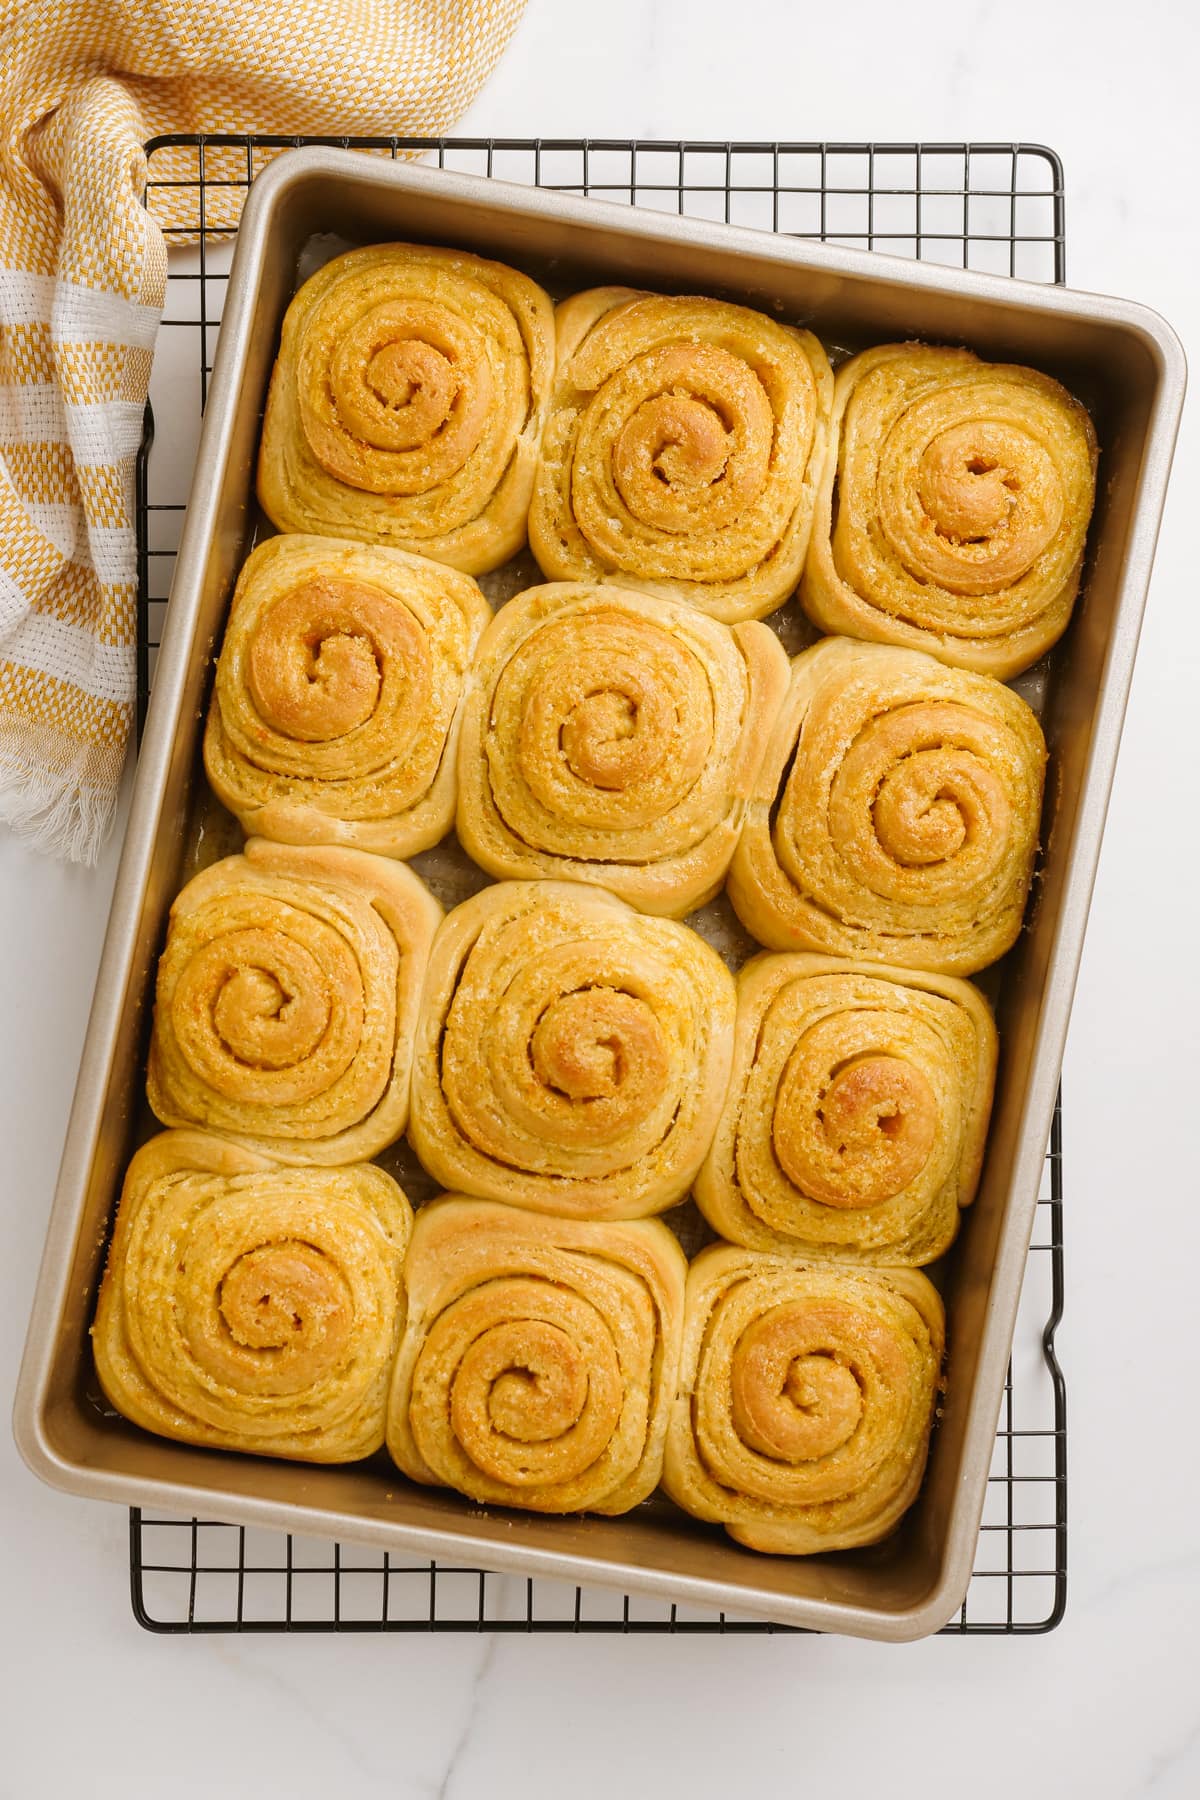 baked golden orange rolls